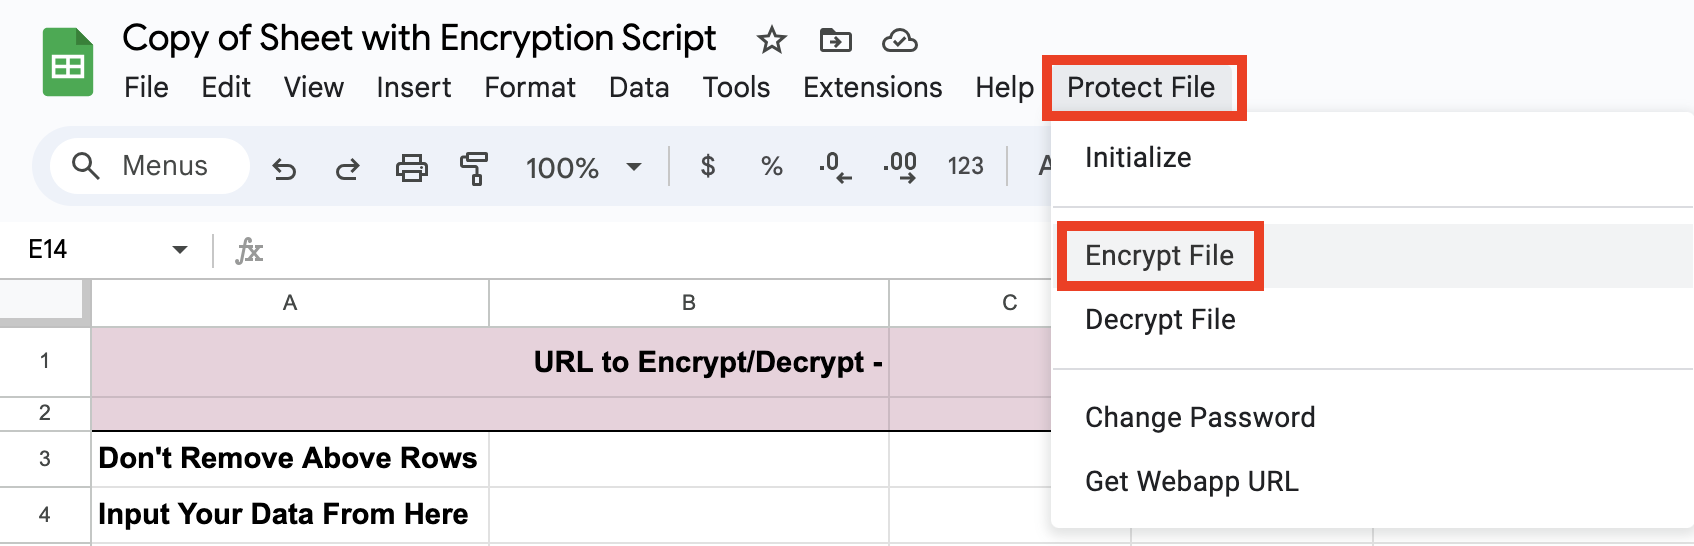 Select Encrypt File